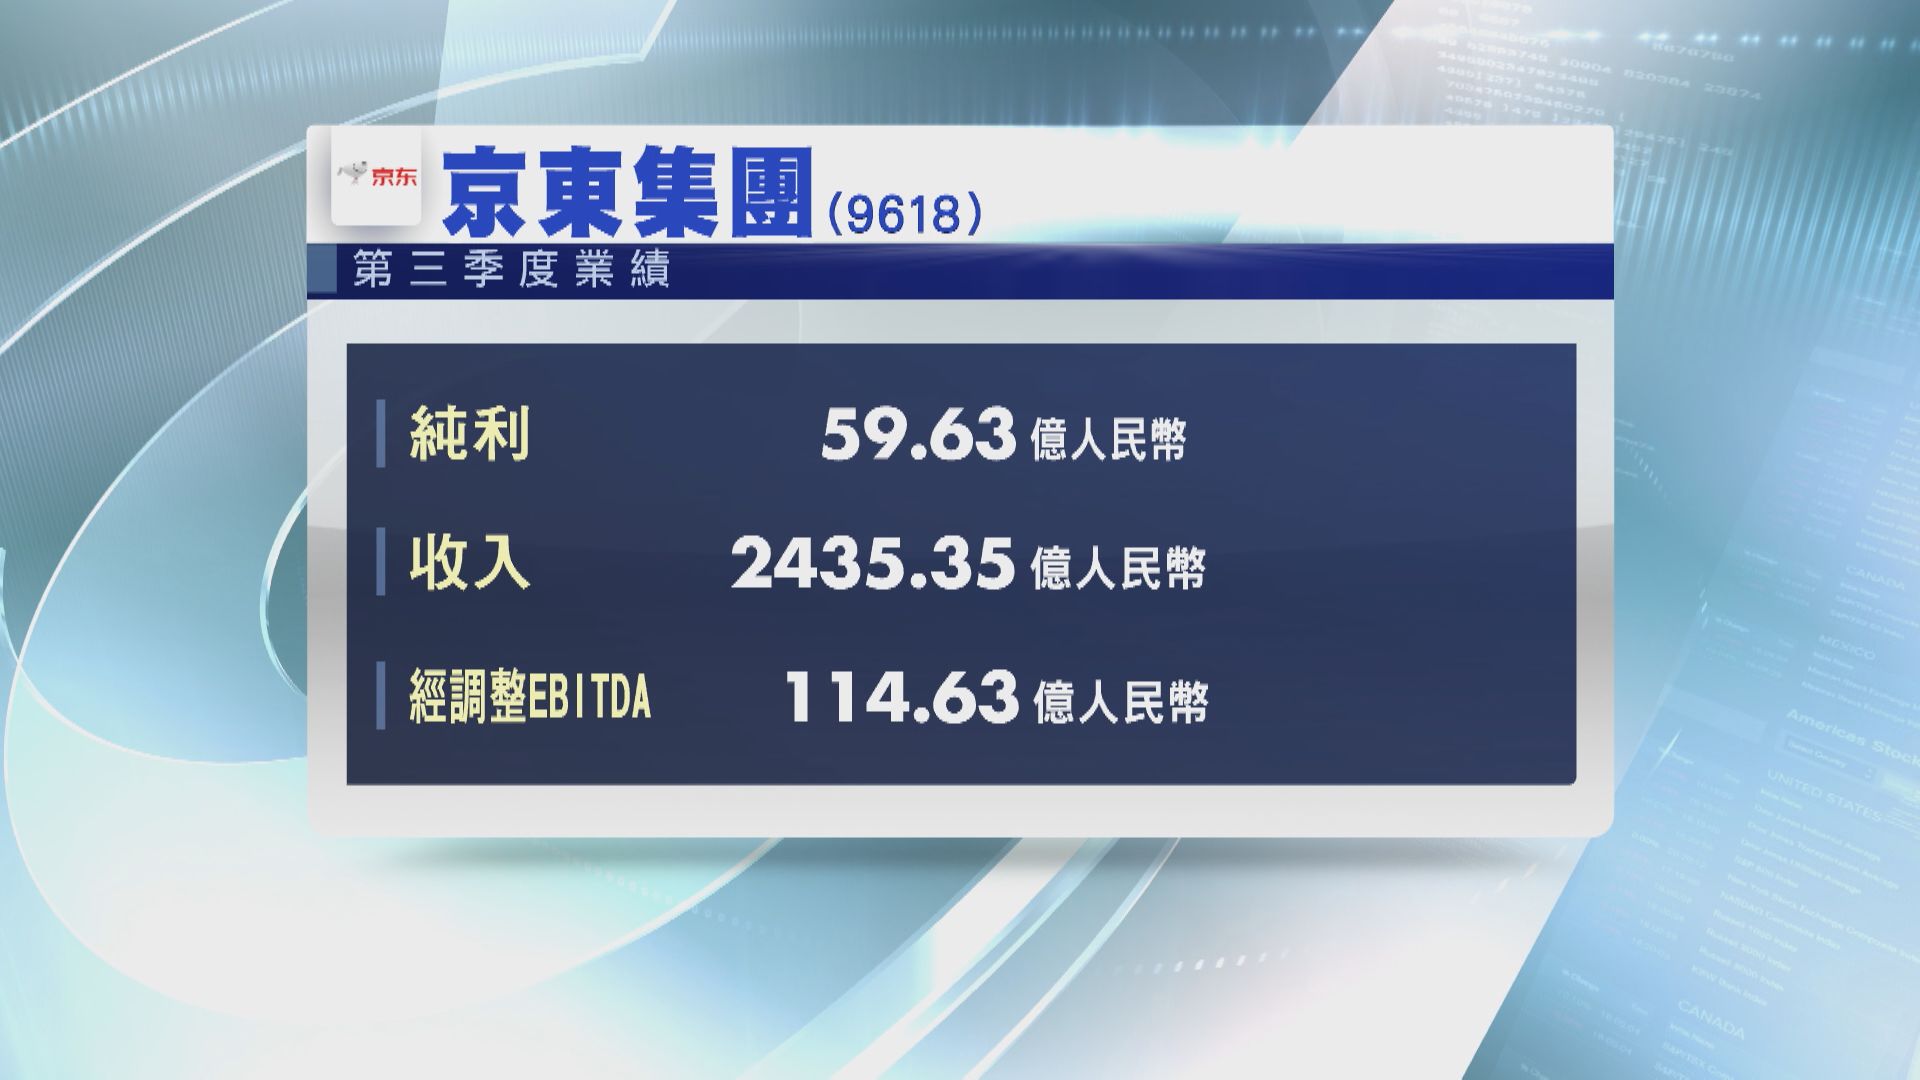 【業績速報】京東上季轉賺59.63億人幣 勝預期